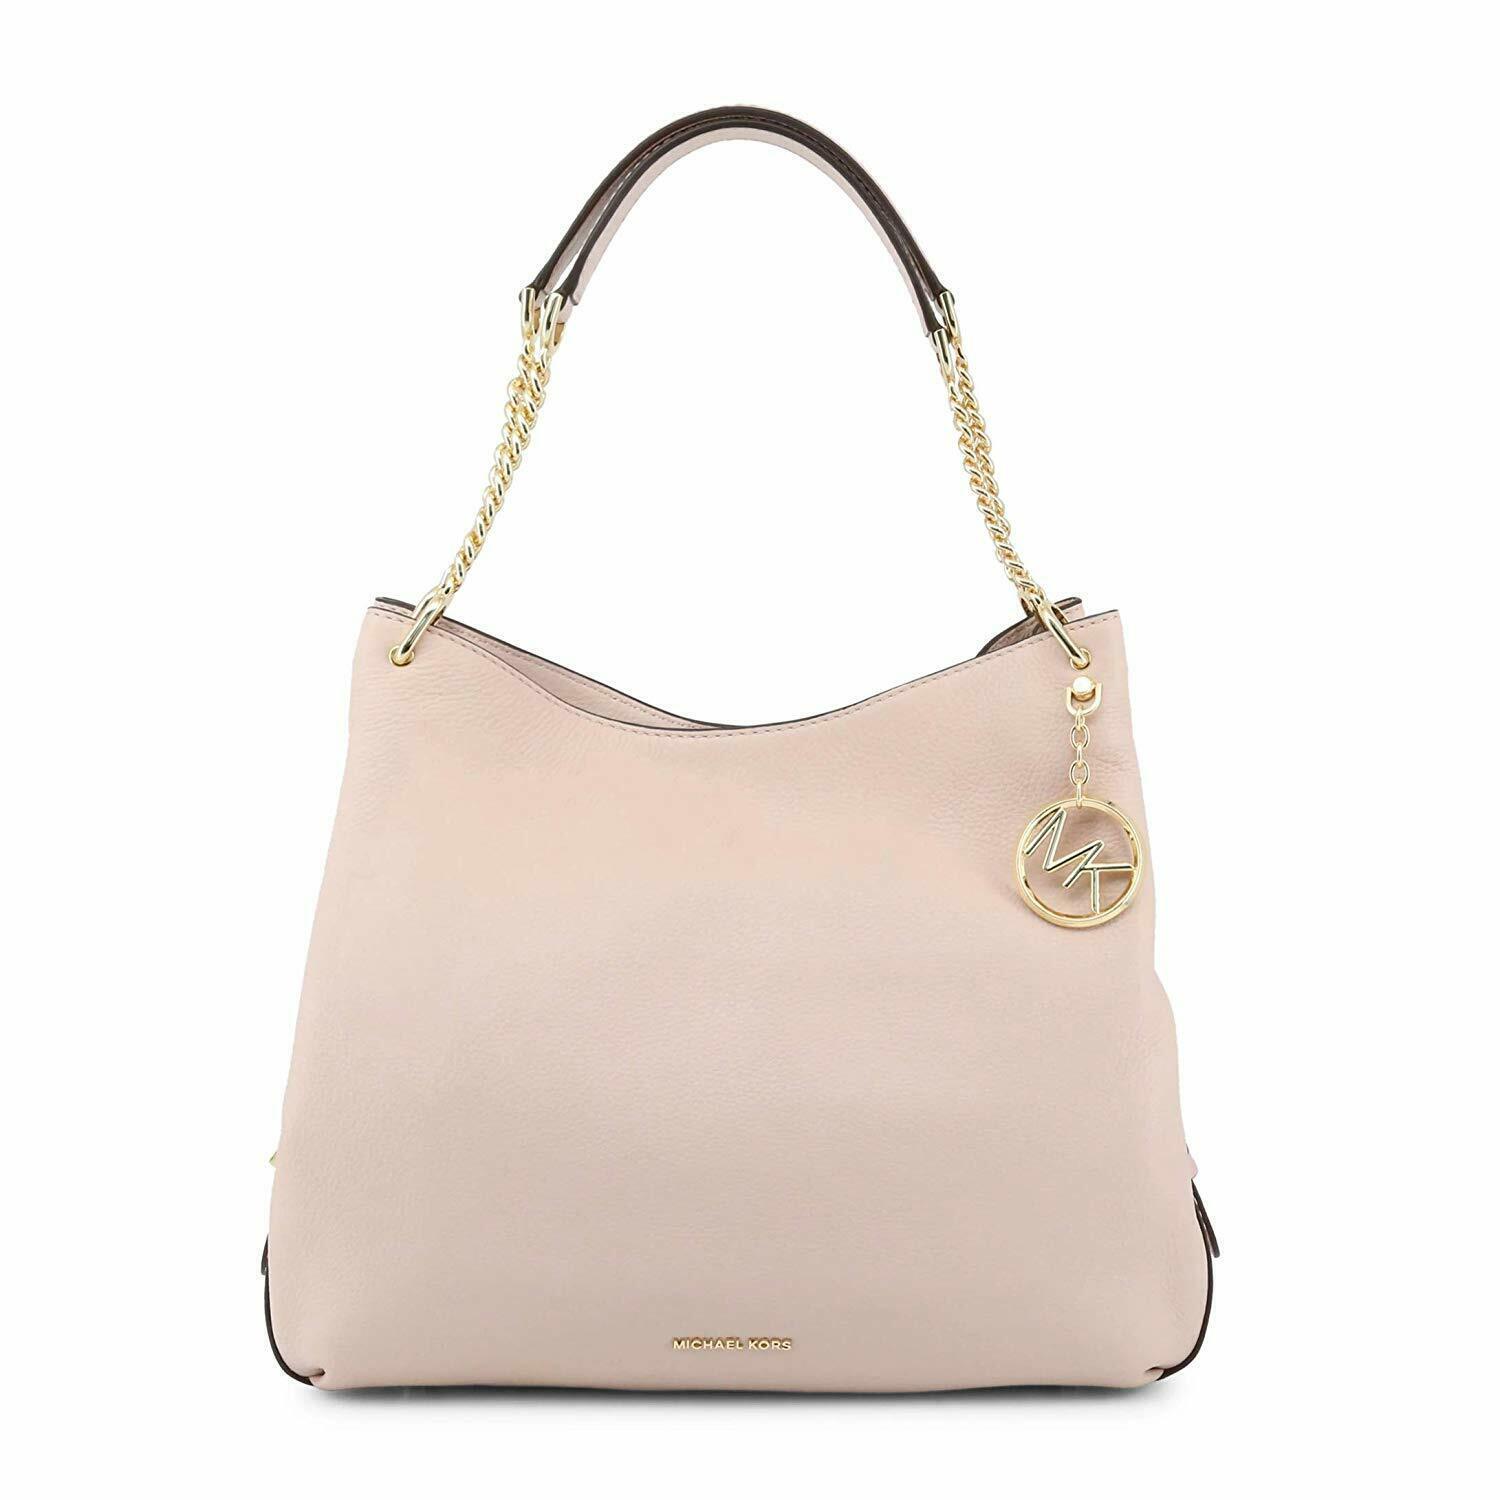 Michael Kors Women's Lillie Leather Shoulder Bag - Soft Pink - $299.00